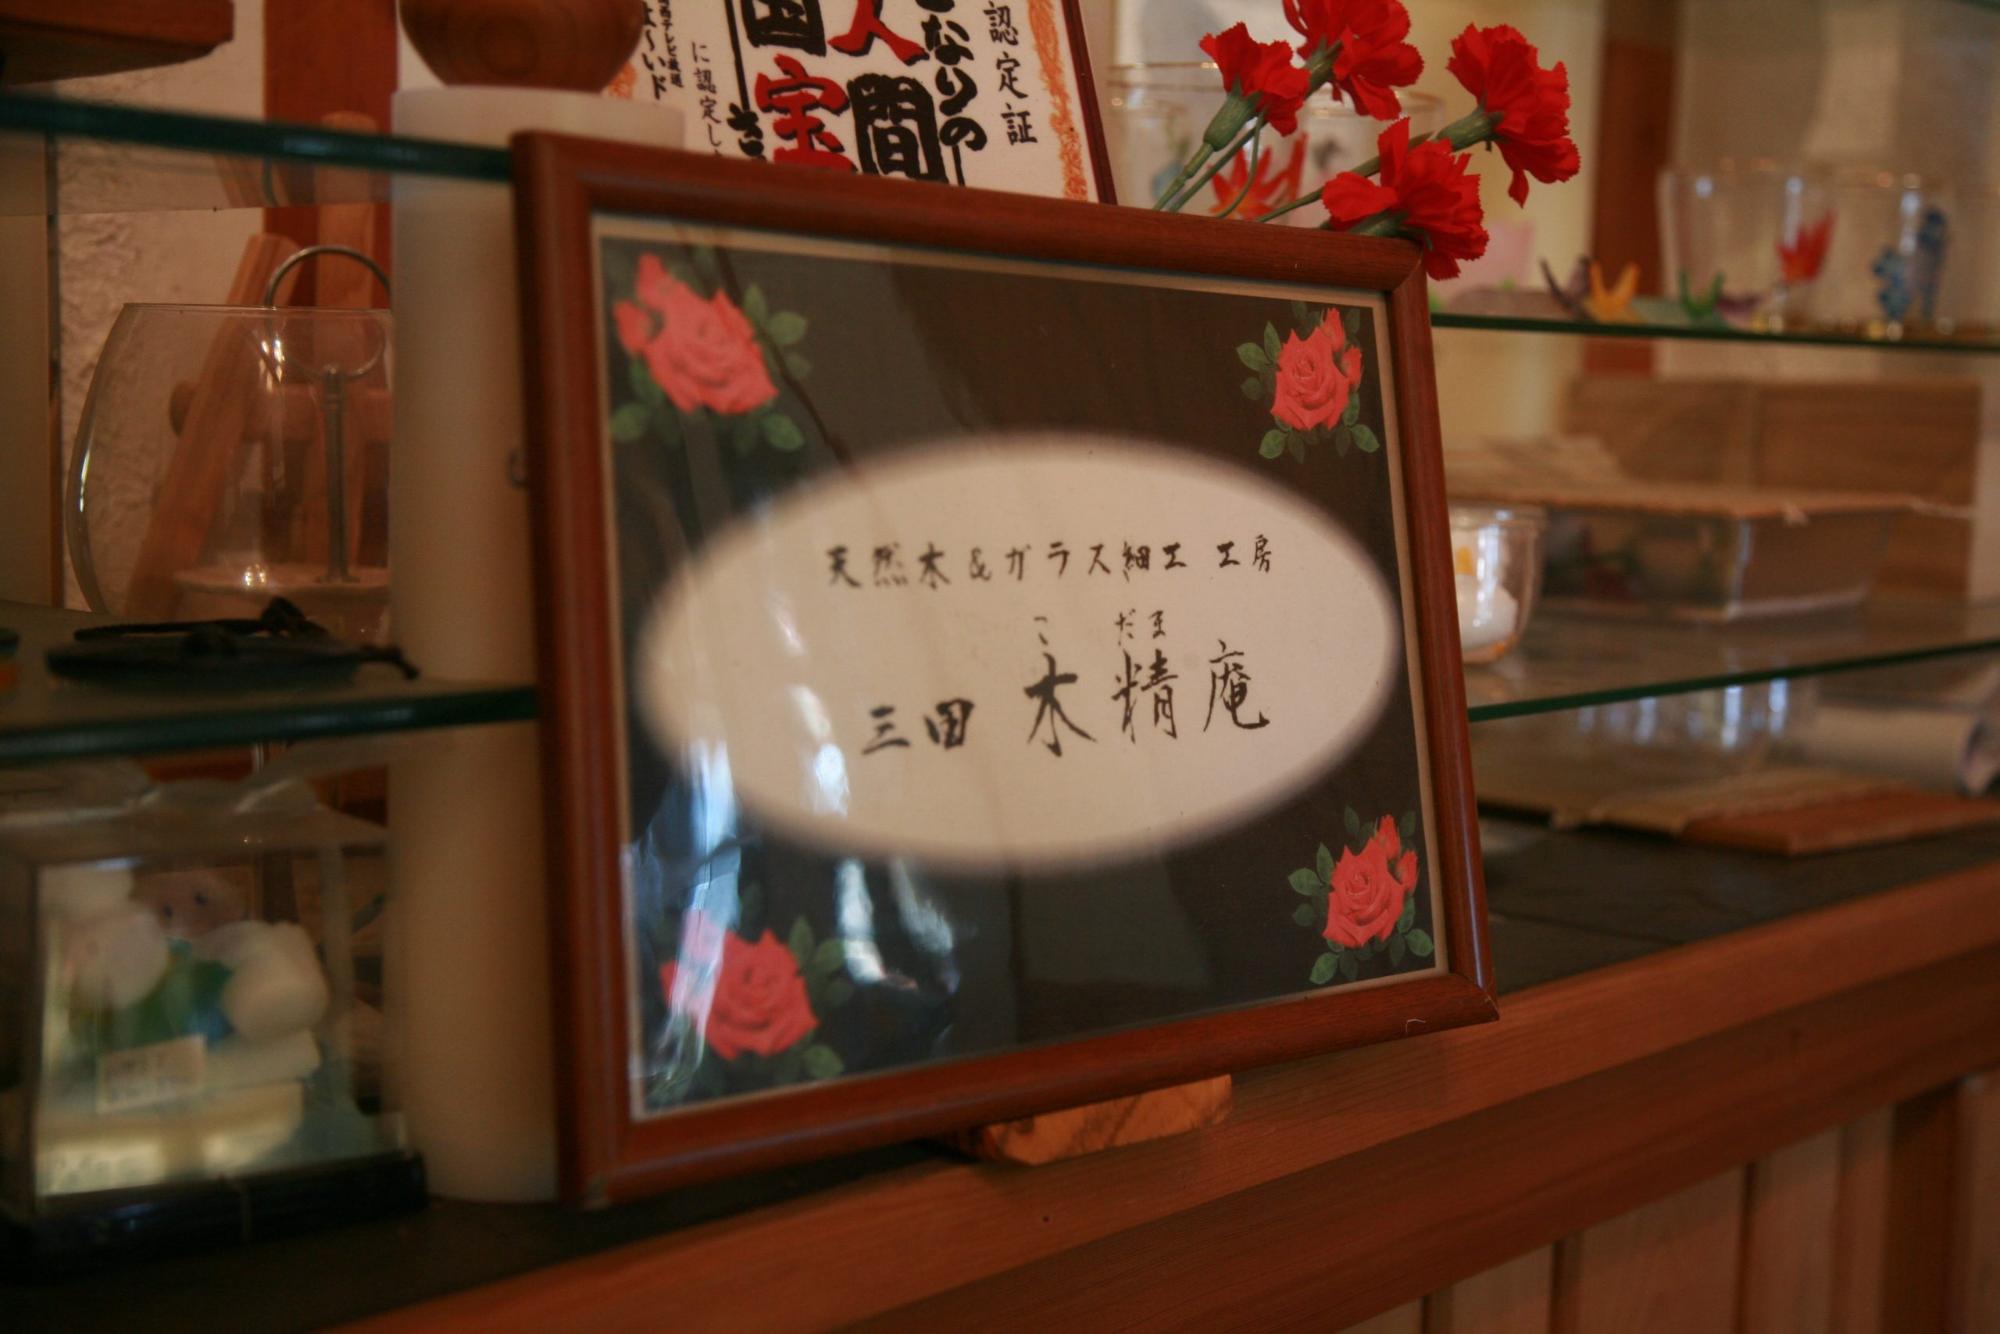 「天然木&ガラス細工 工房 三田木精庵(こだまあん)」と工房の名前が記載されたガラス製ネームプレートの写真